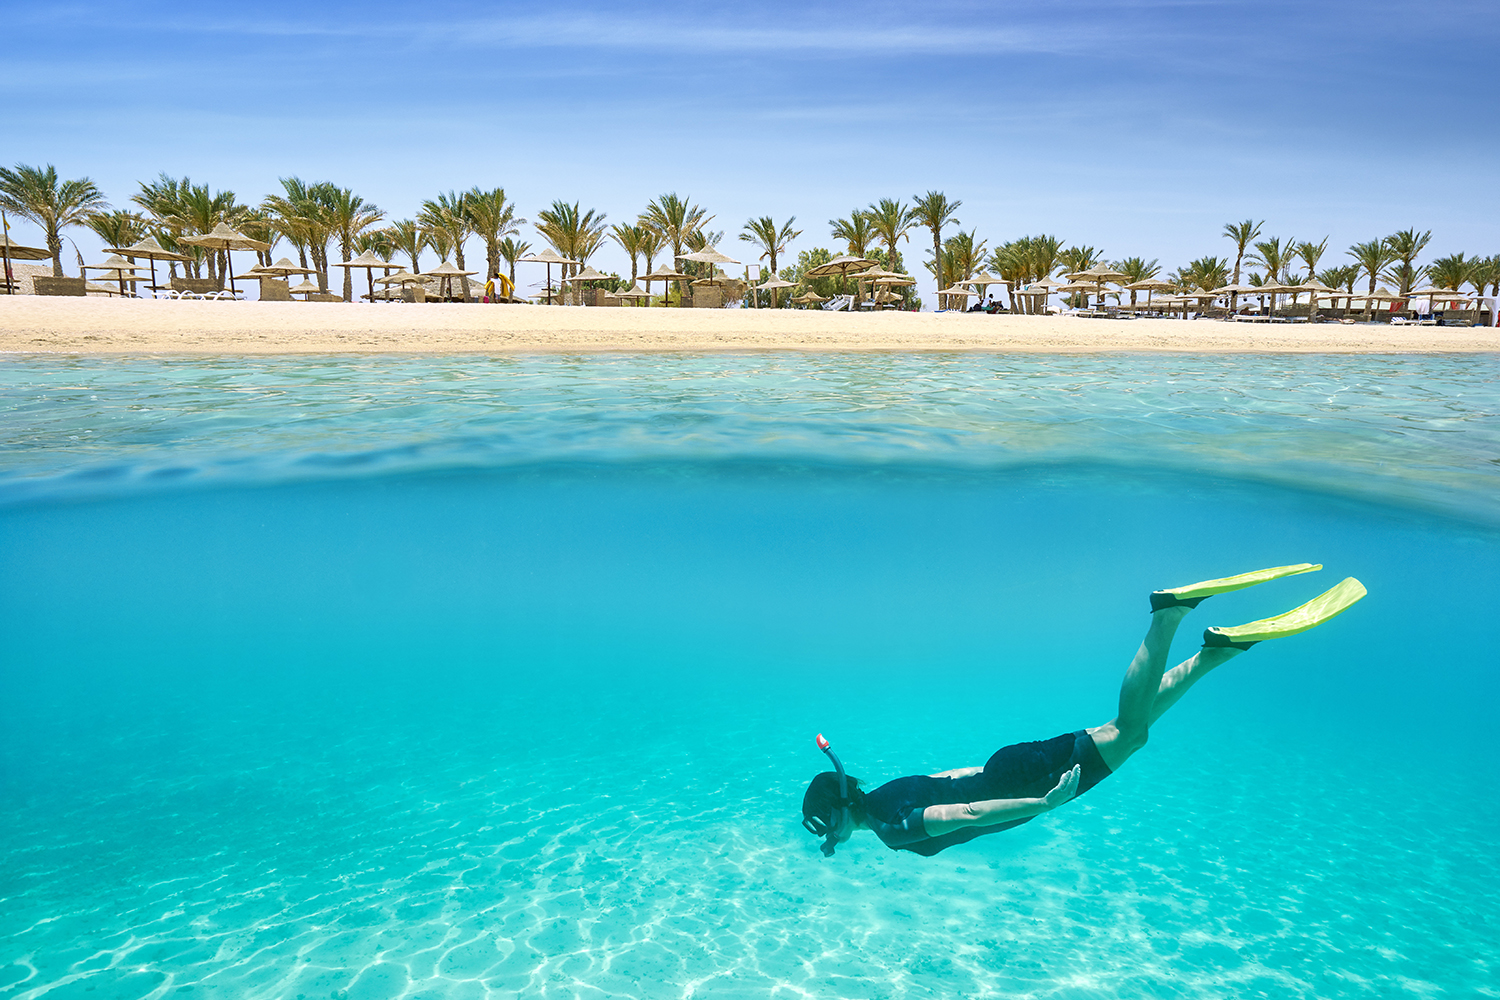 Ain Sokhna beach in Egypt